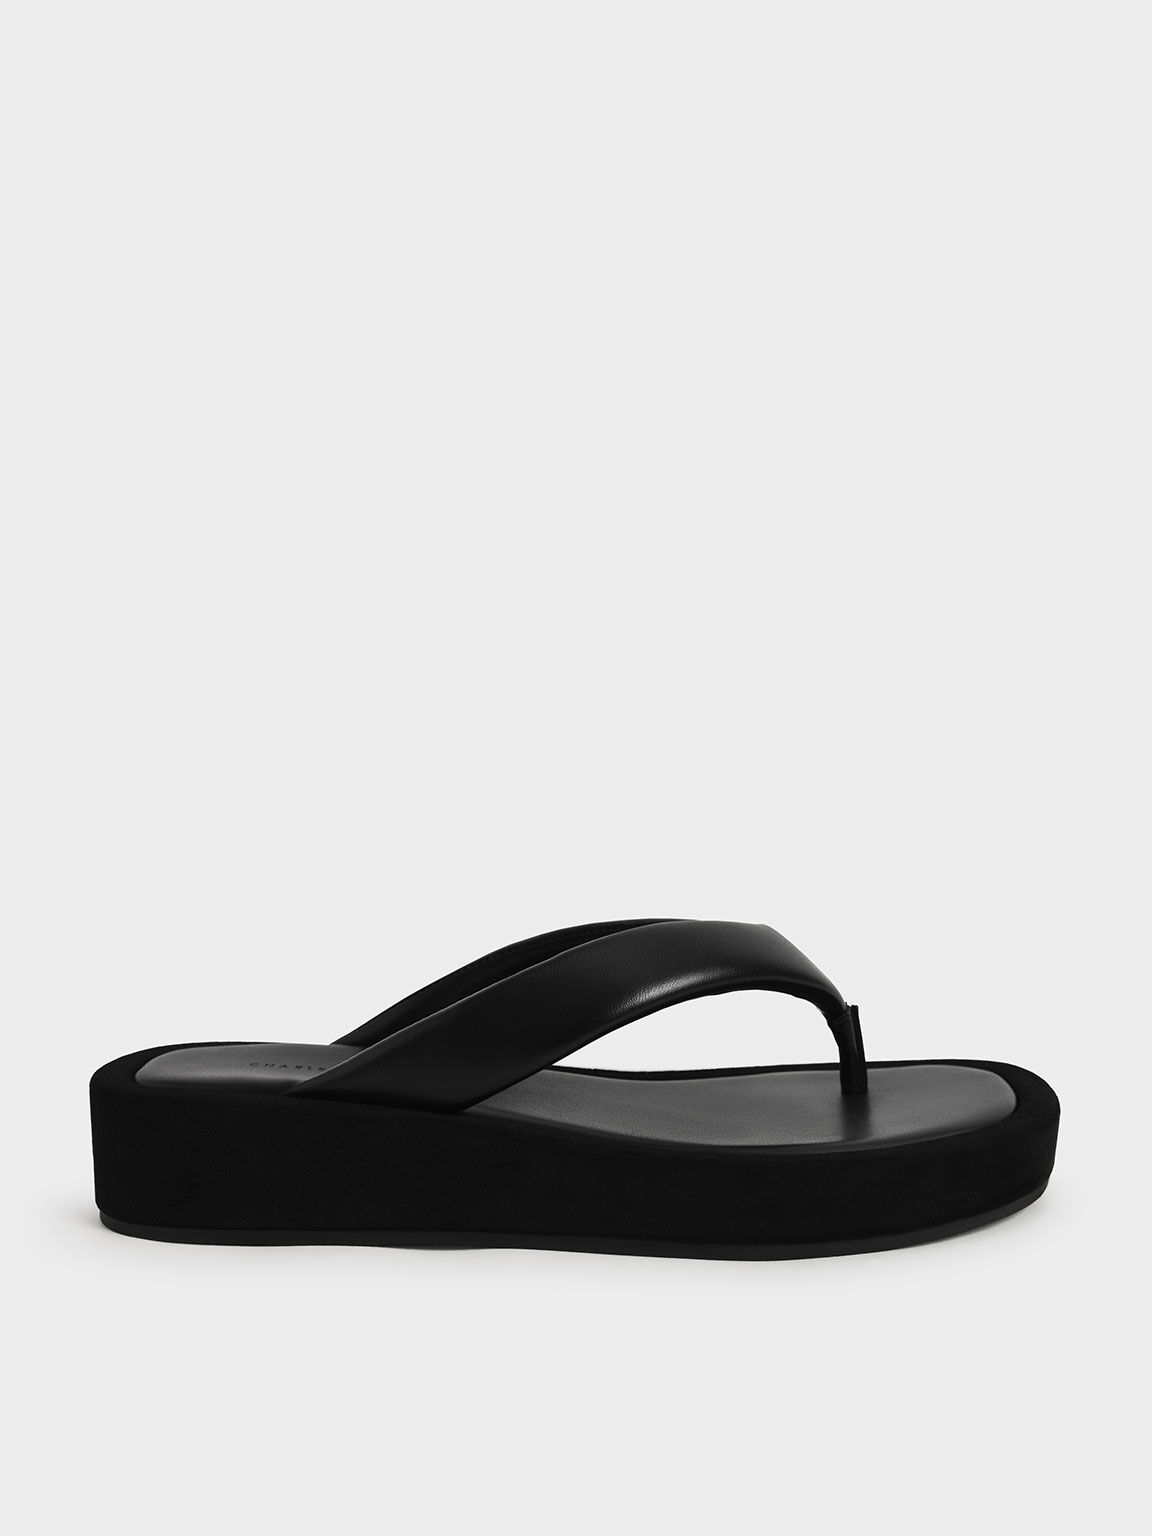 platform thong sandals black